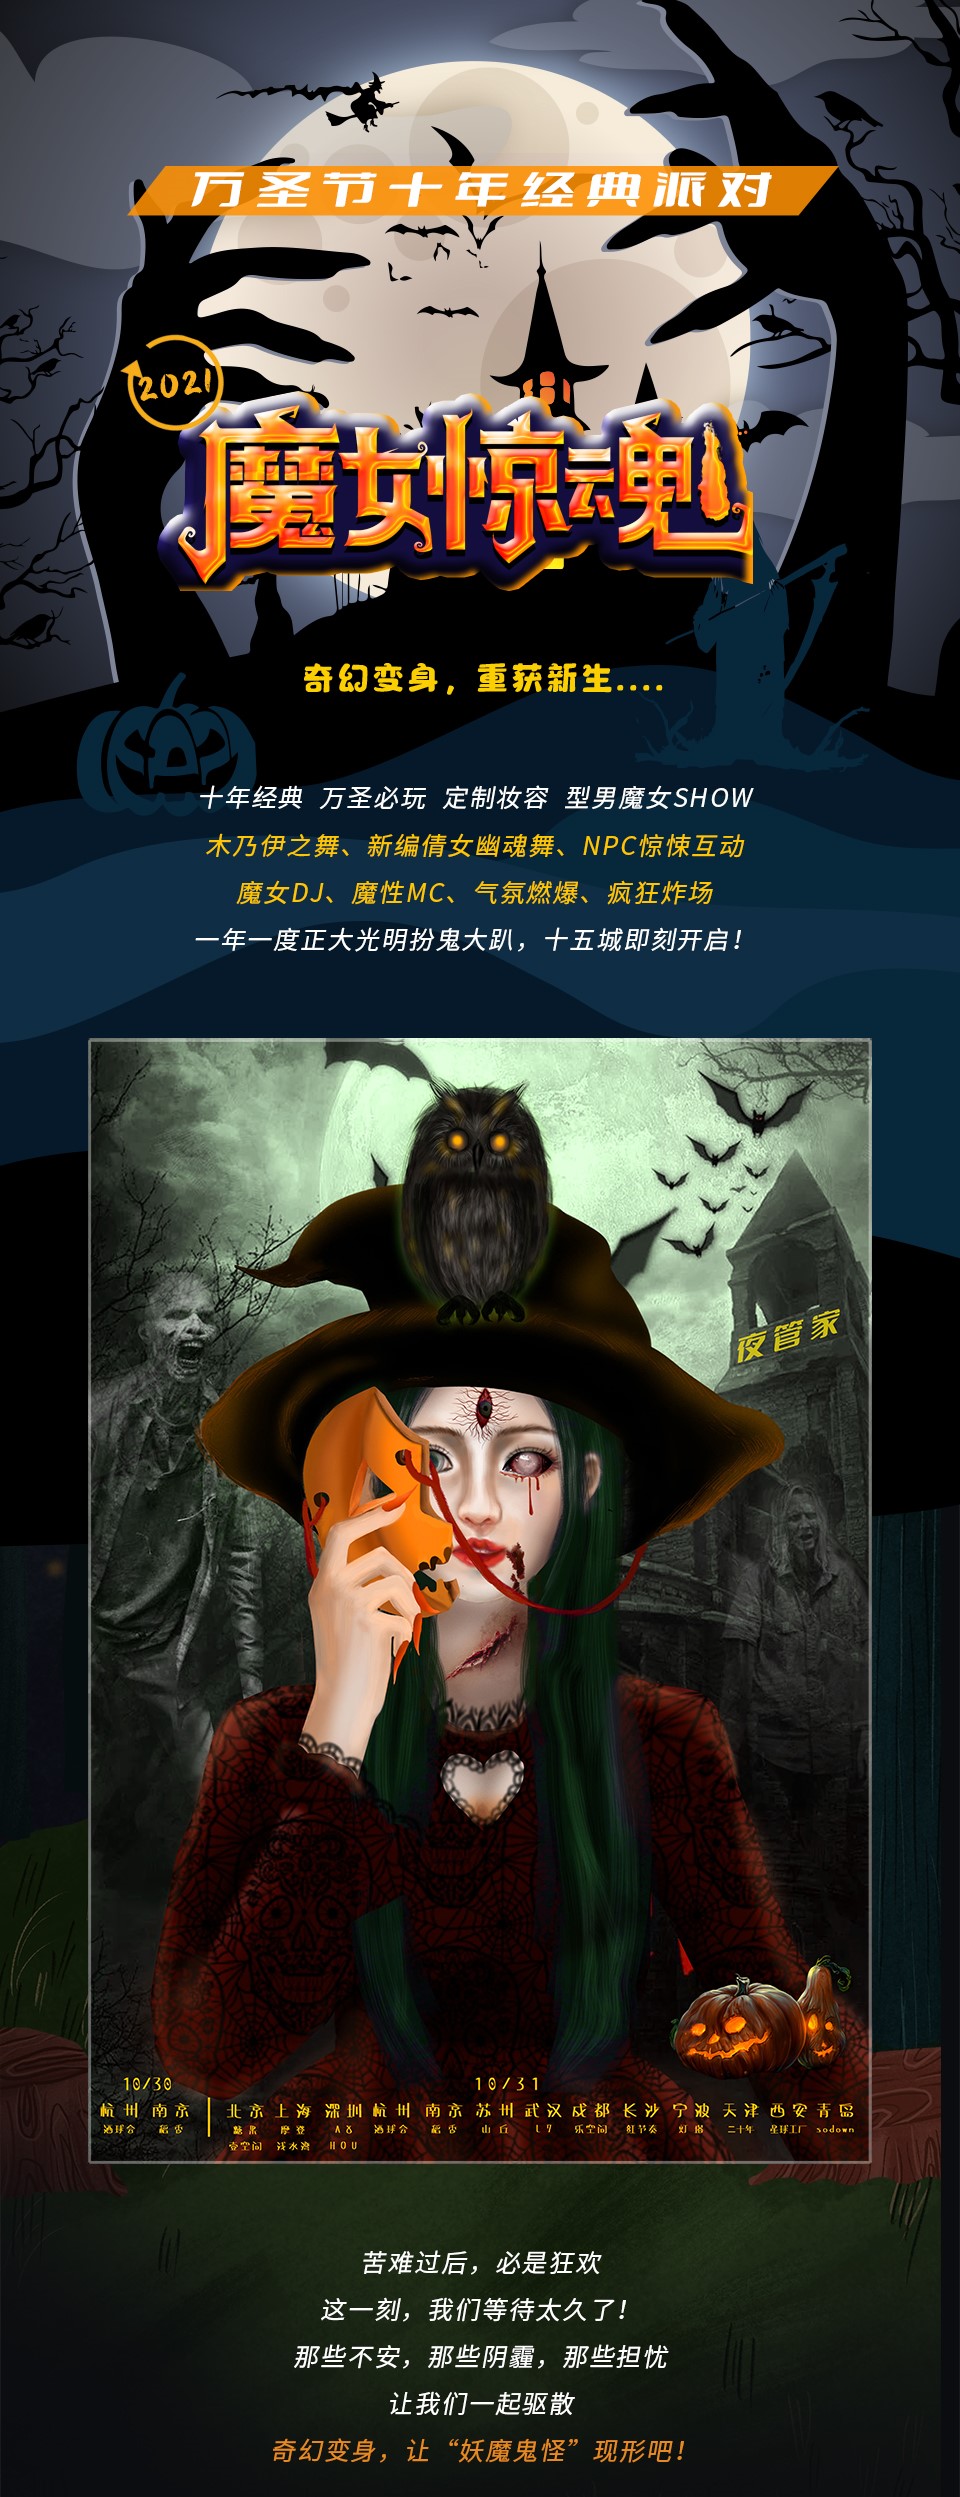 2021万圣节“魔女惊魂”变装惊悚派对—奇幻变身，重获新生-北京站